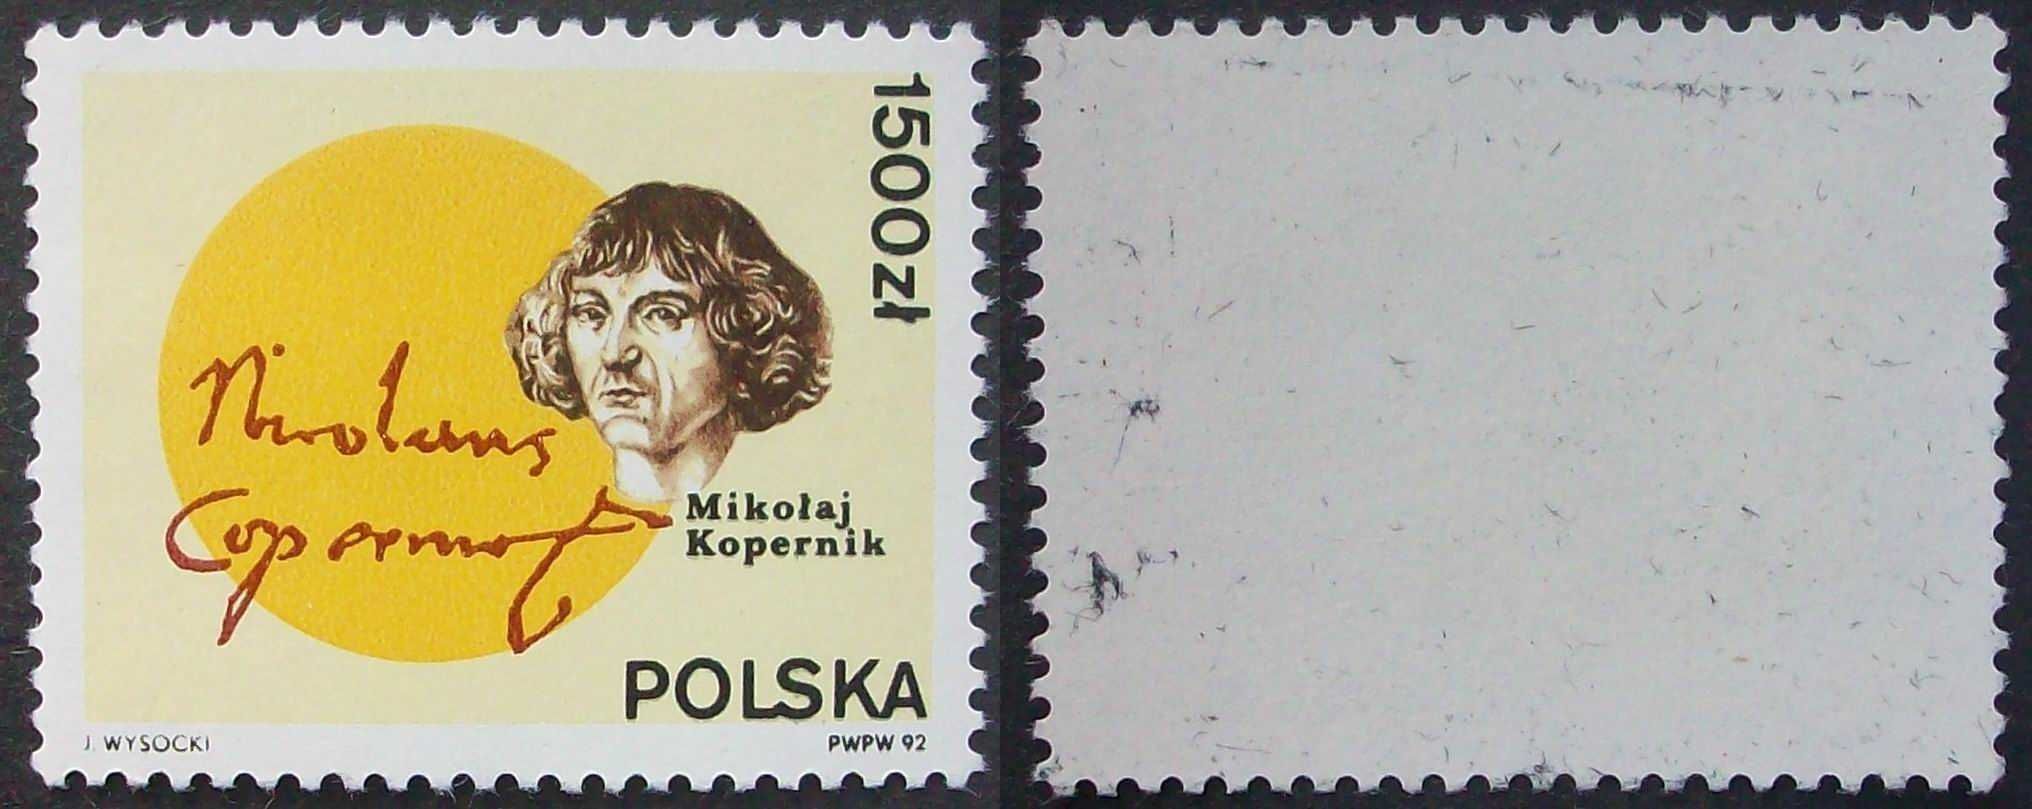 L Znaczki polskie rok 1992 kwartał II